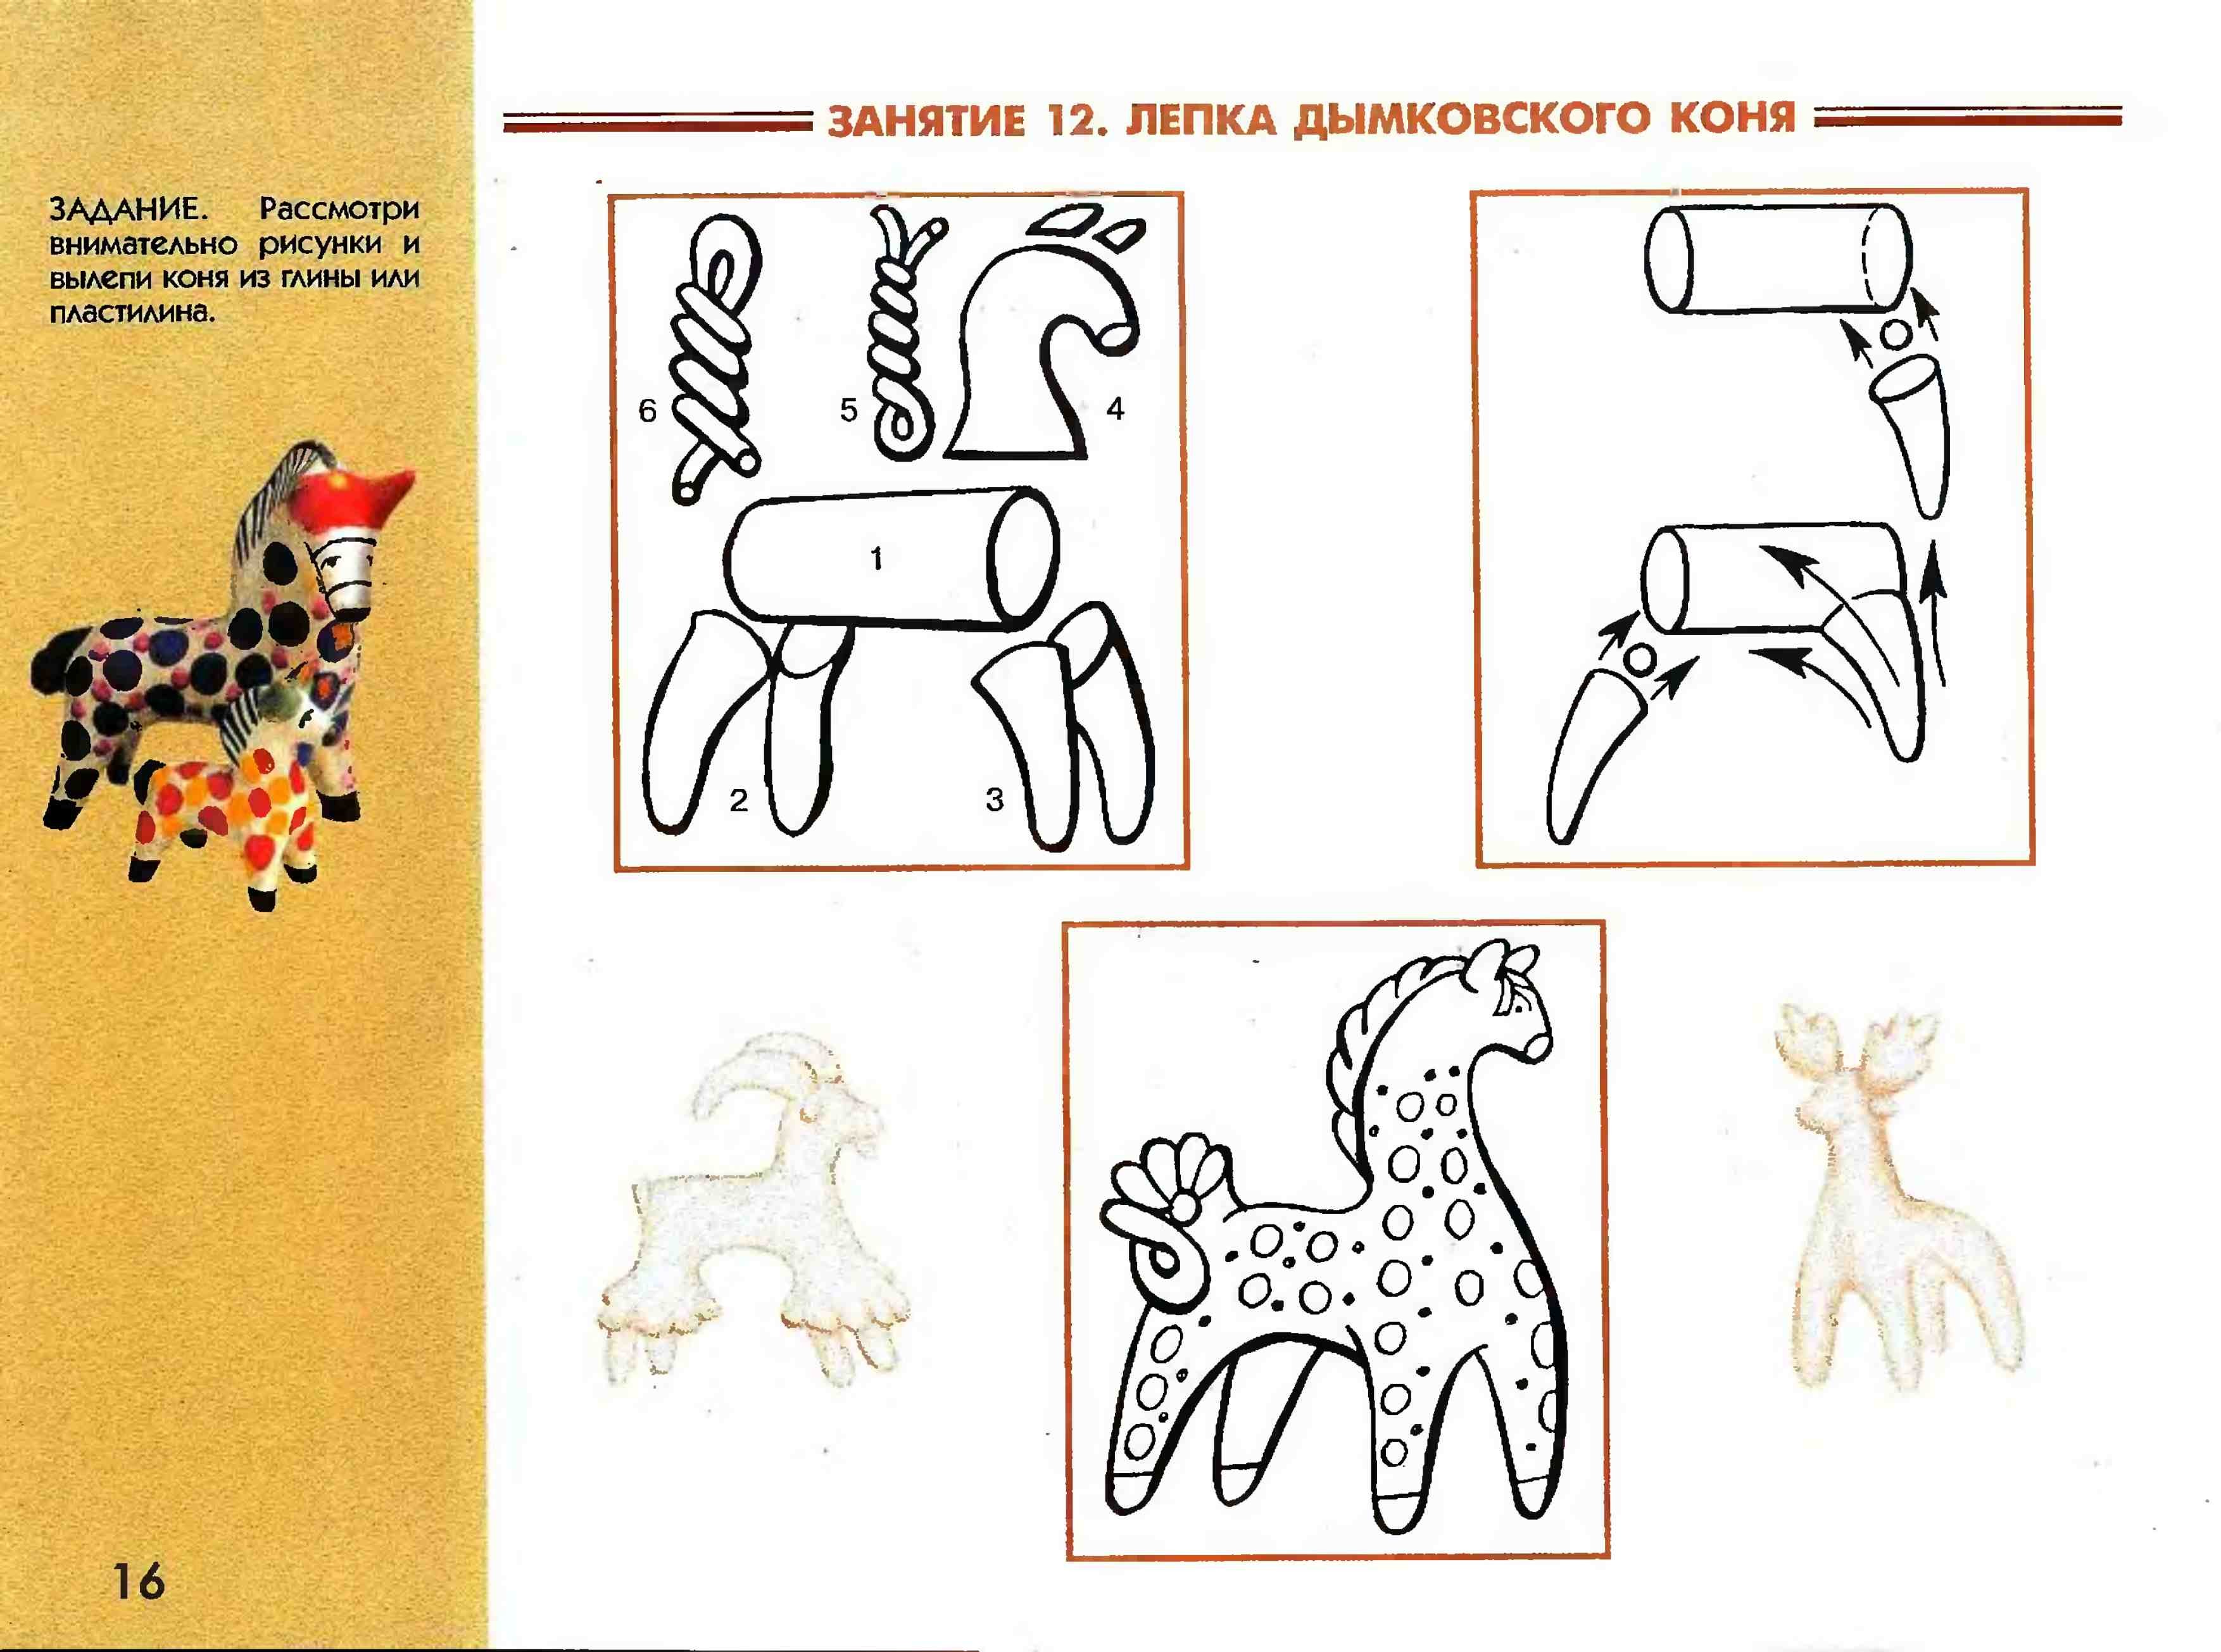 Схема лепки дымковского коня для дошкольников